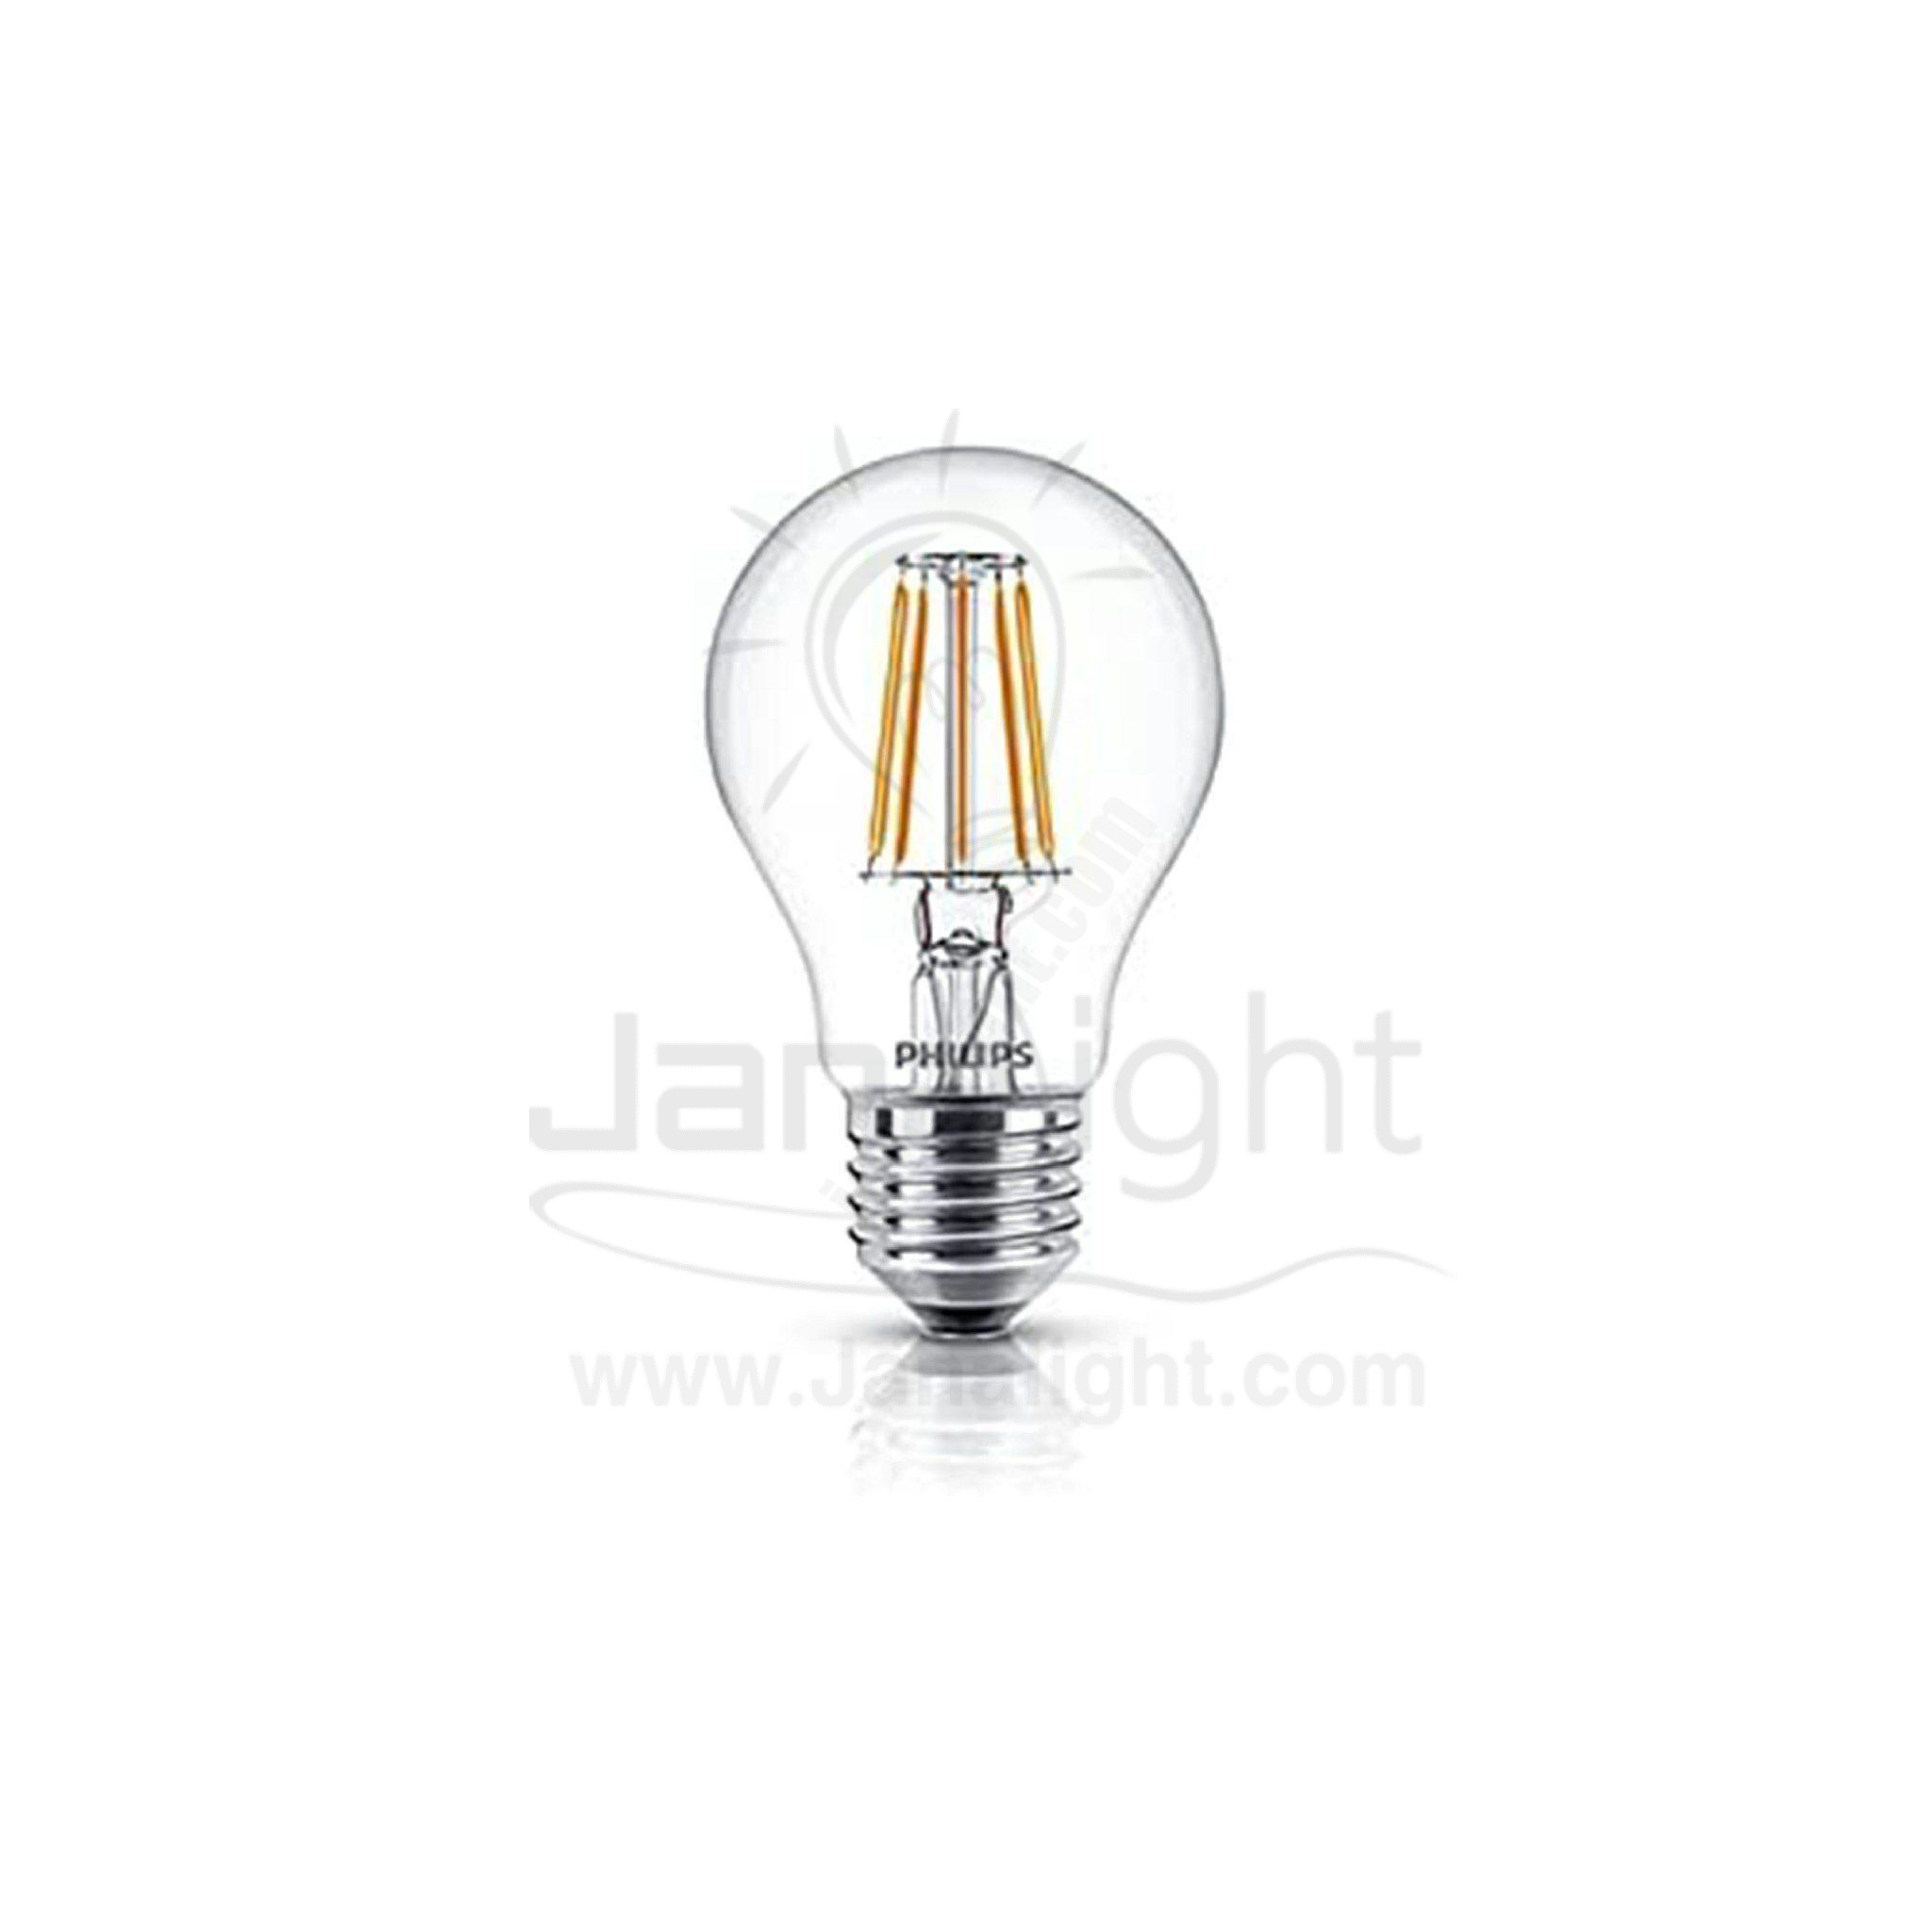 لمبة فلامنت كلاسيك شفاف لد 4 وات وورم فيليبس filament LED lamp 4 watt warm philips